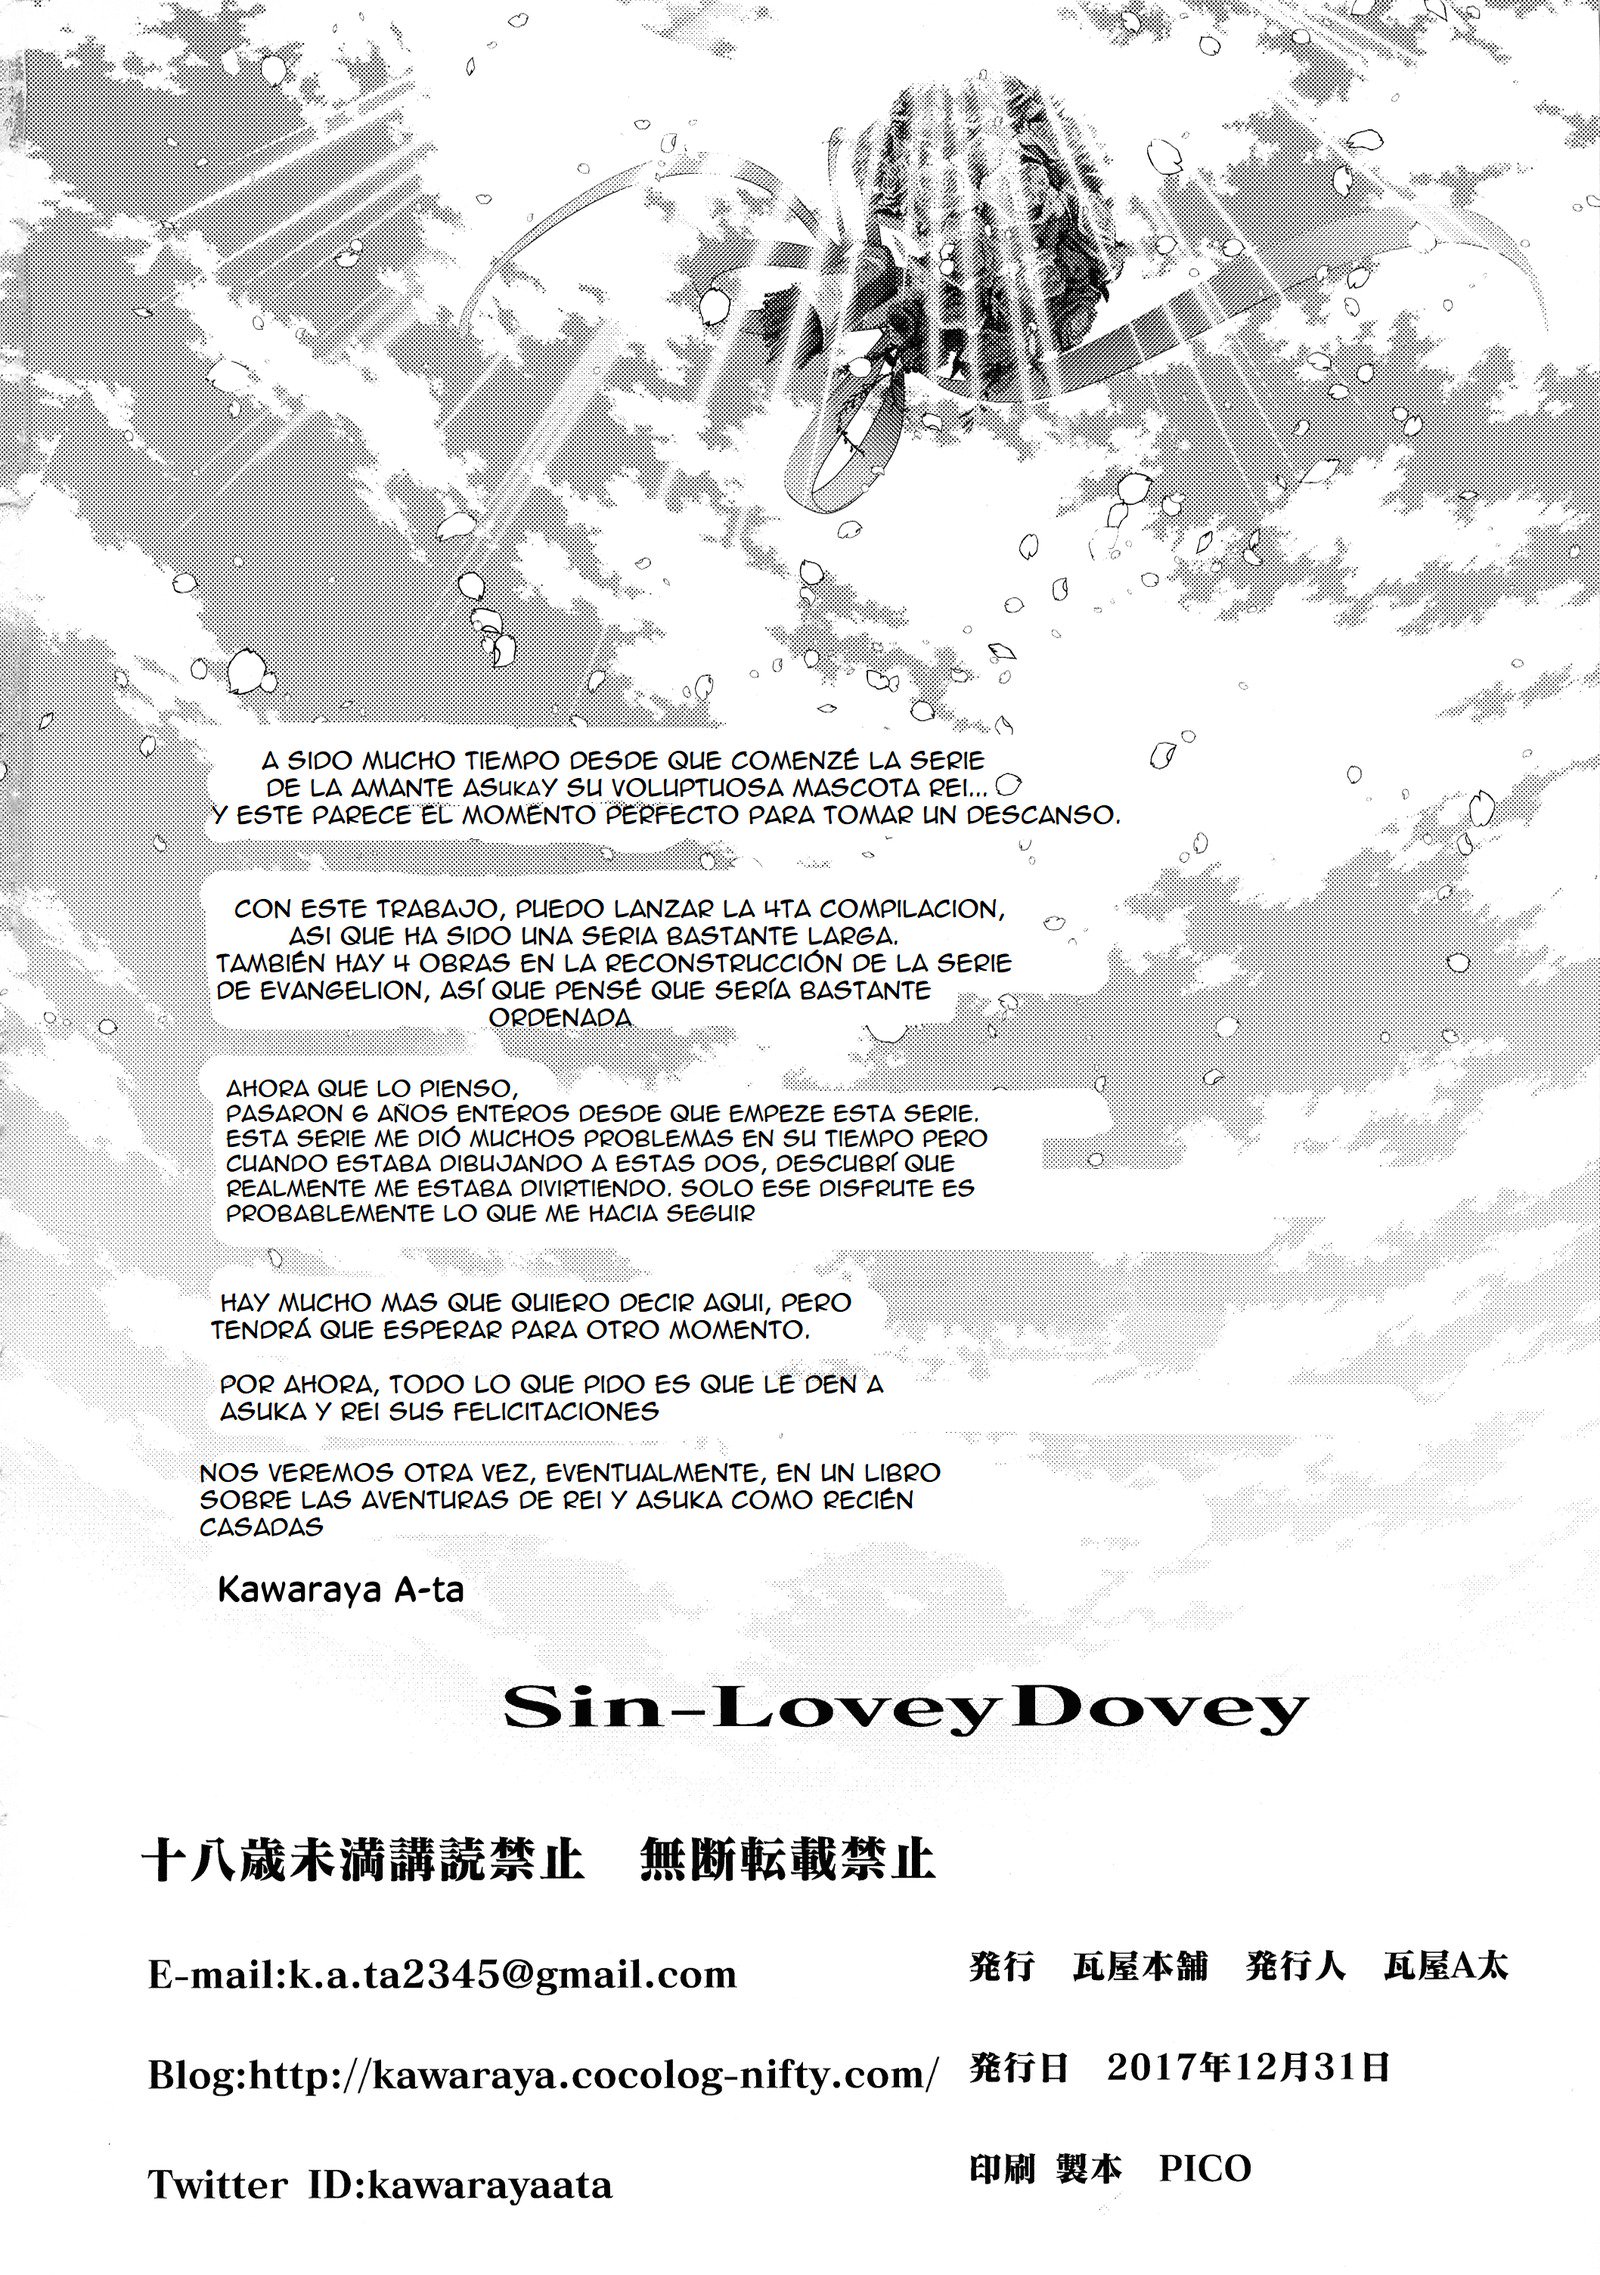 Sin-Lovey Dovey